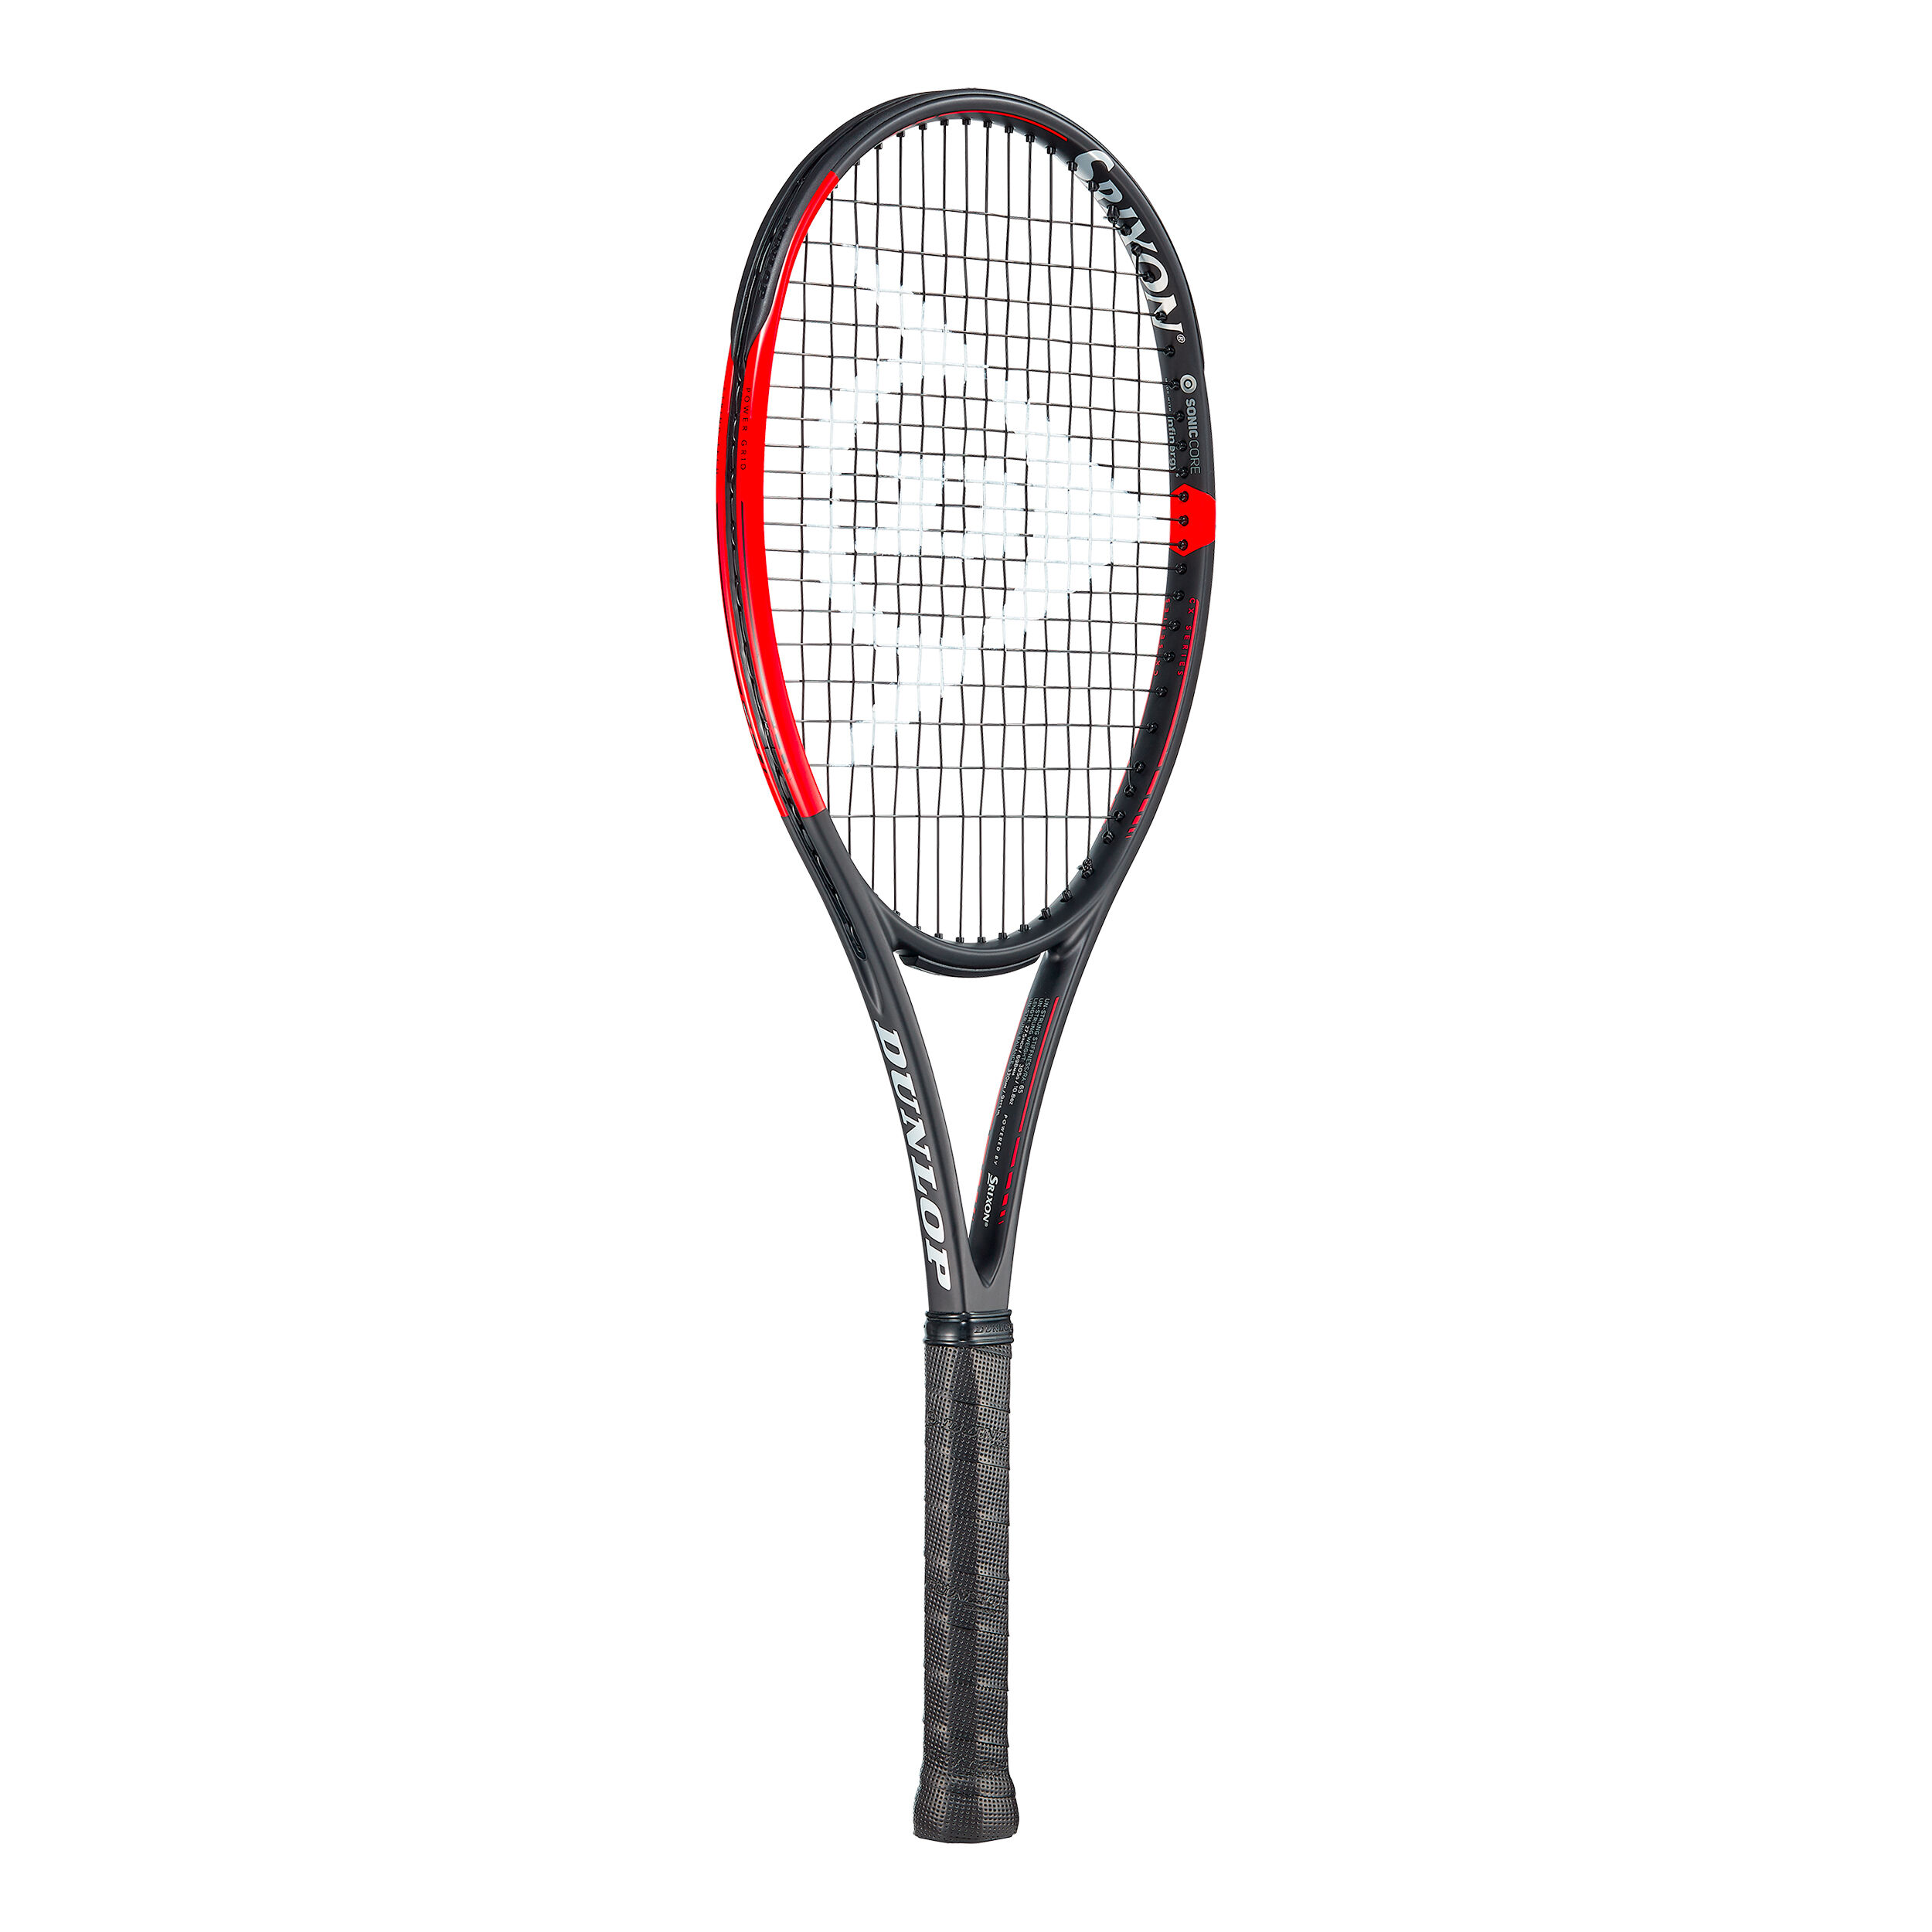 Buy Dunlop Srixon CX 200 Tour (used) online | Tennis Point COM